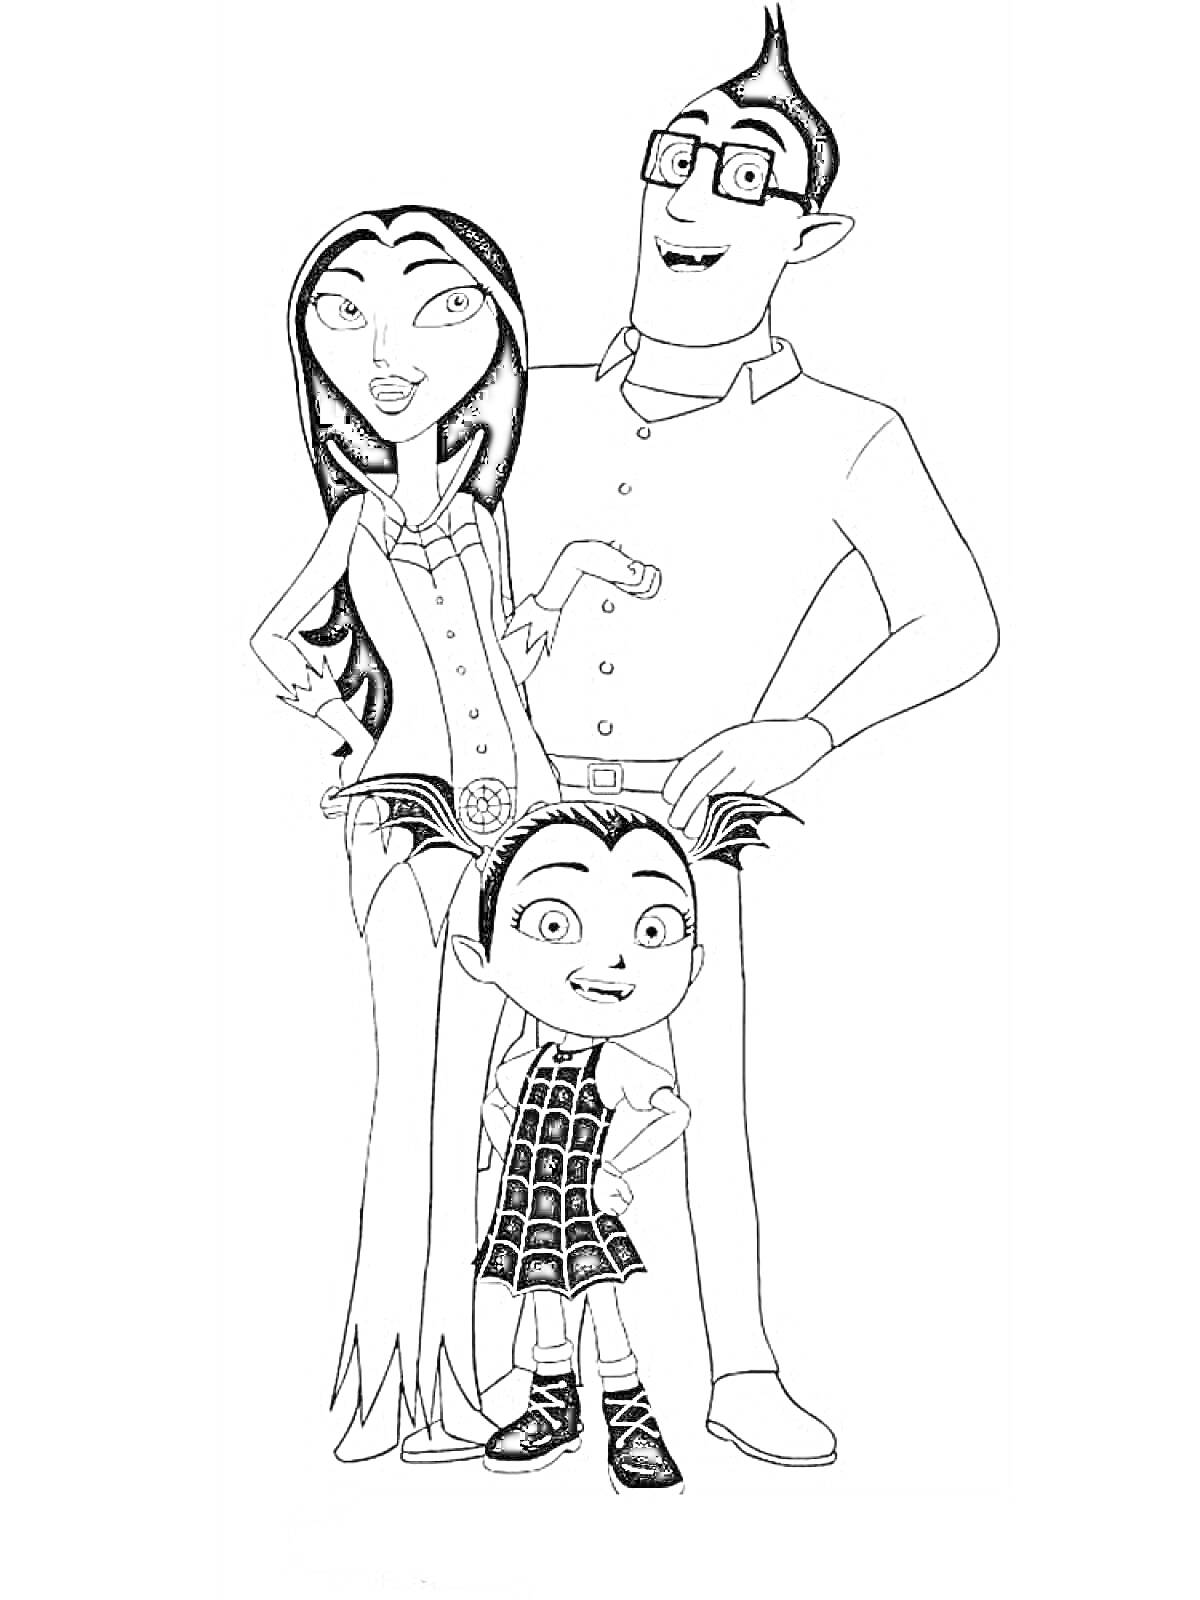 Раскраска Семья с Вампириной (однороговая девочка в сетчатом платье, женщина с длинными волосами в юбке, мужчина в очках и рубашке)